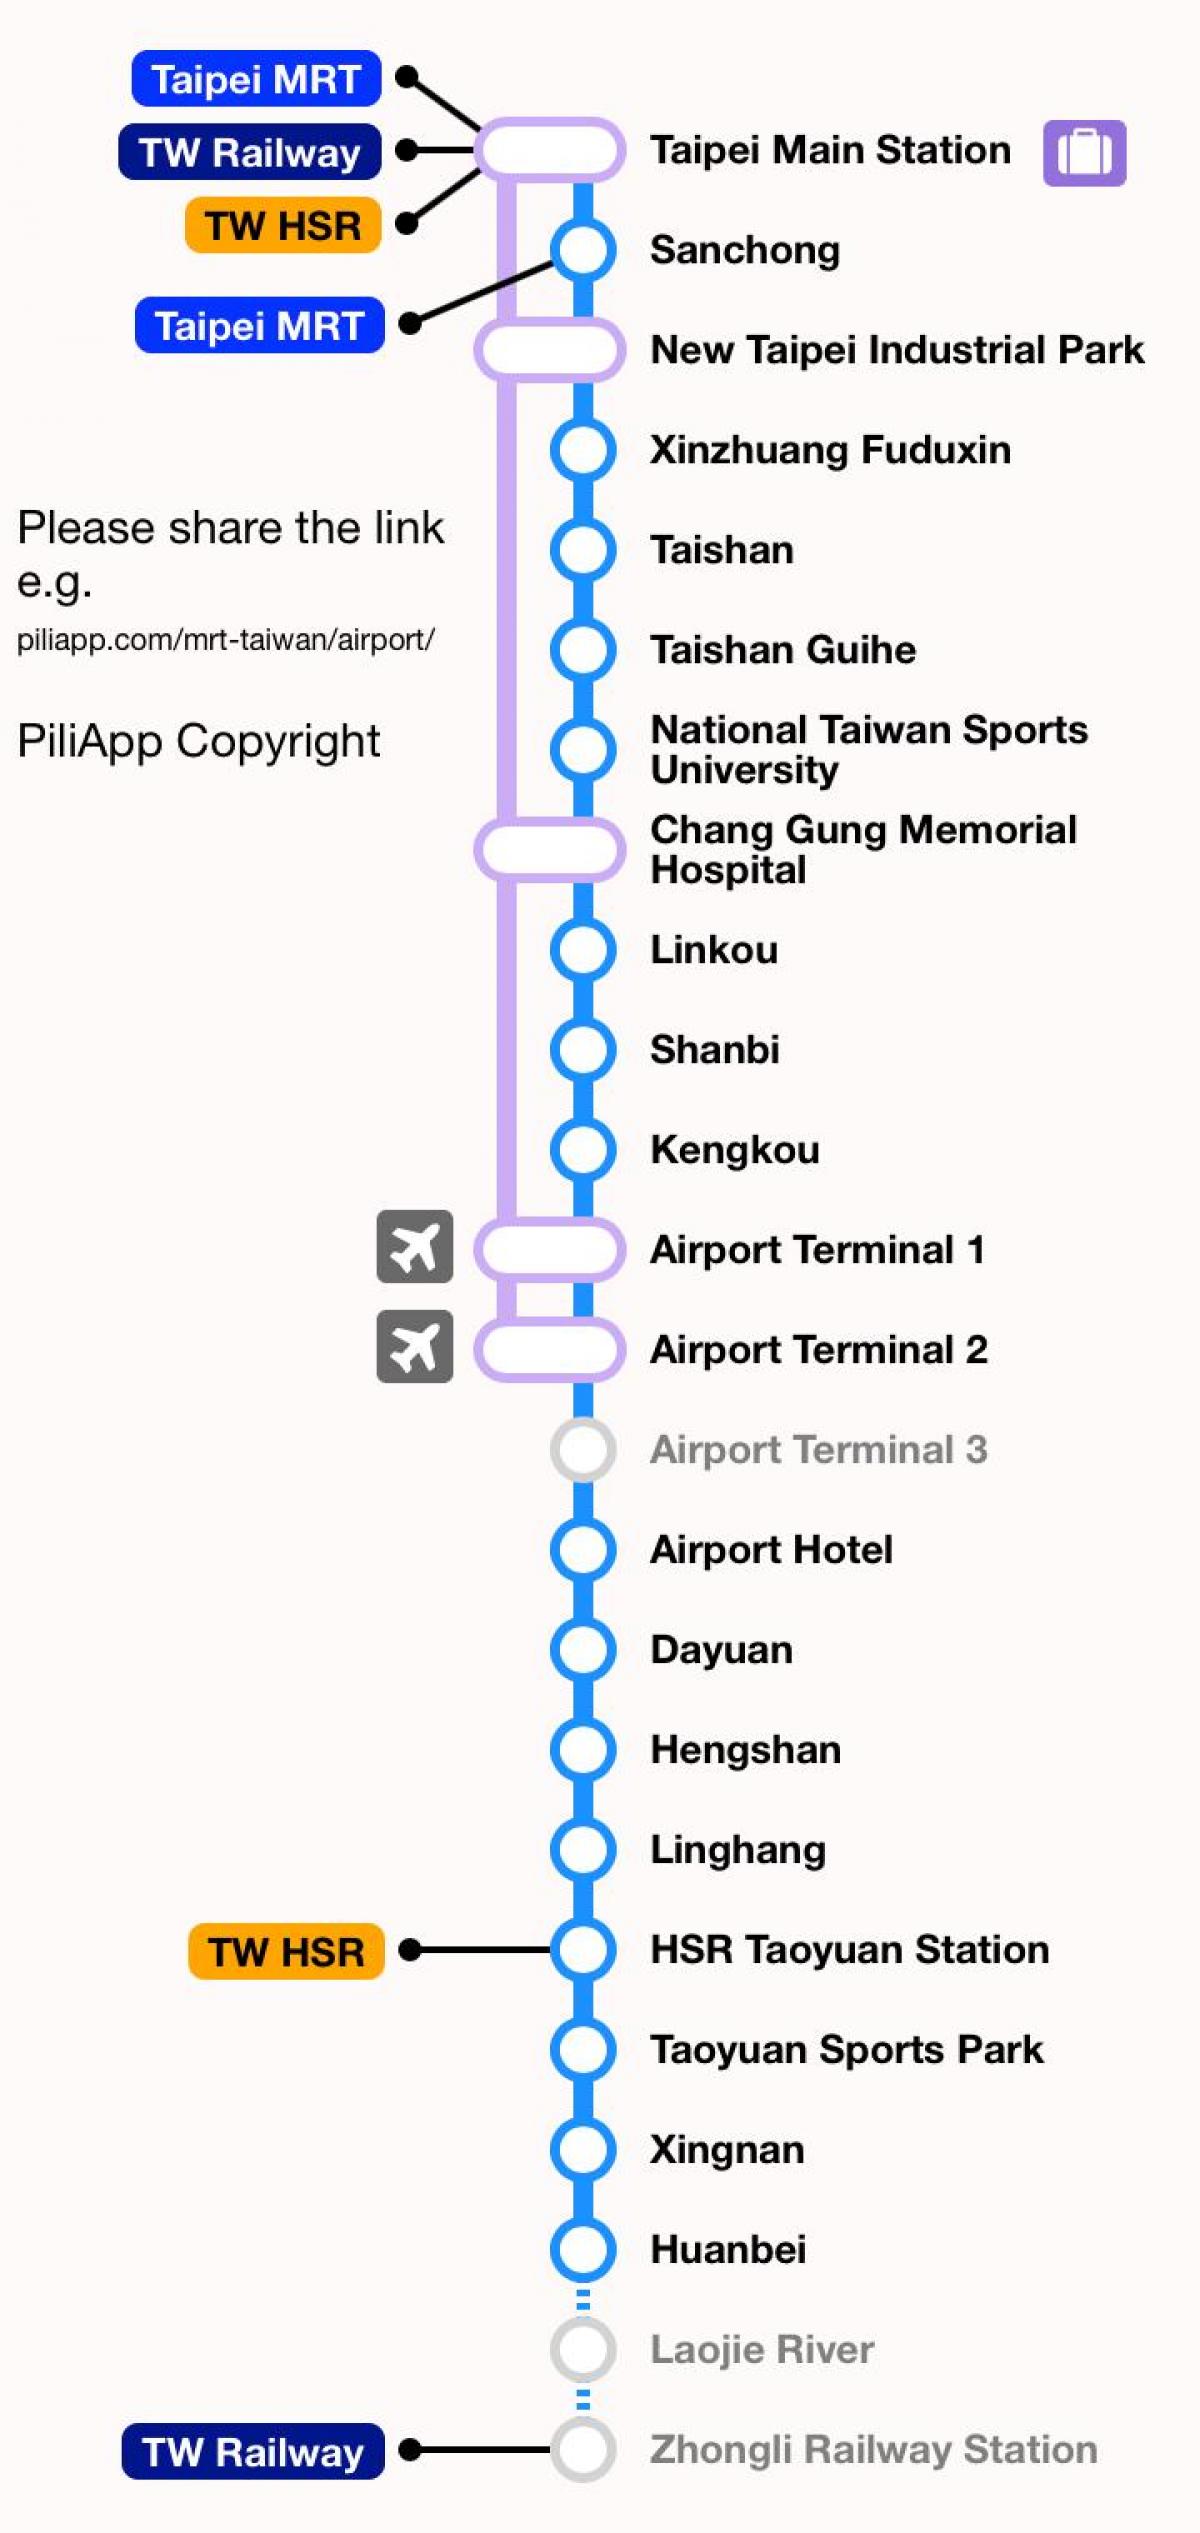 Taipei mrt-kort taoyuan lufthavn